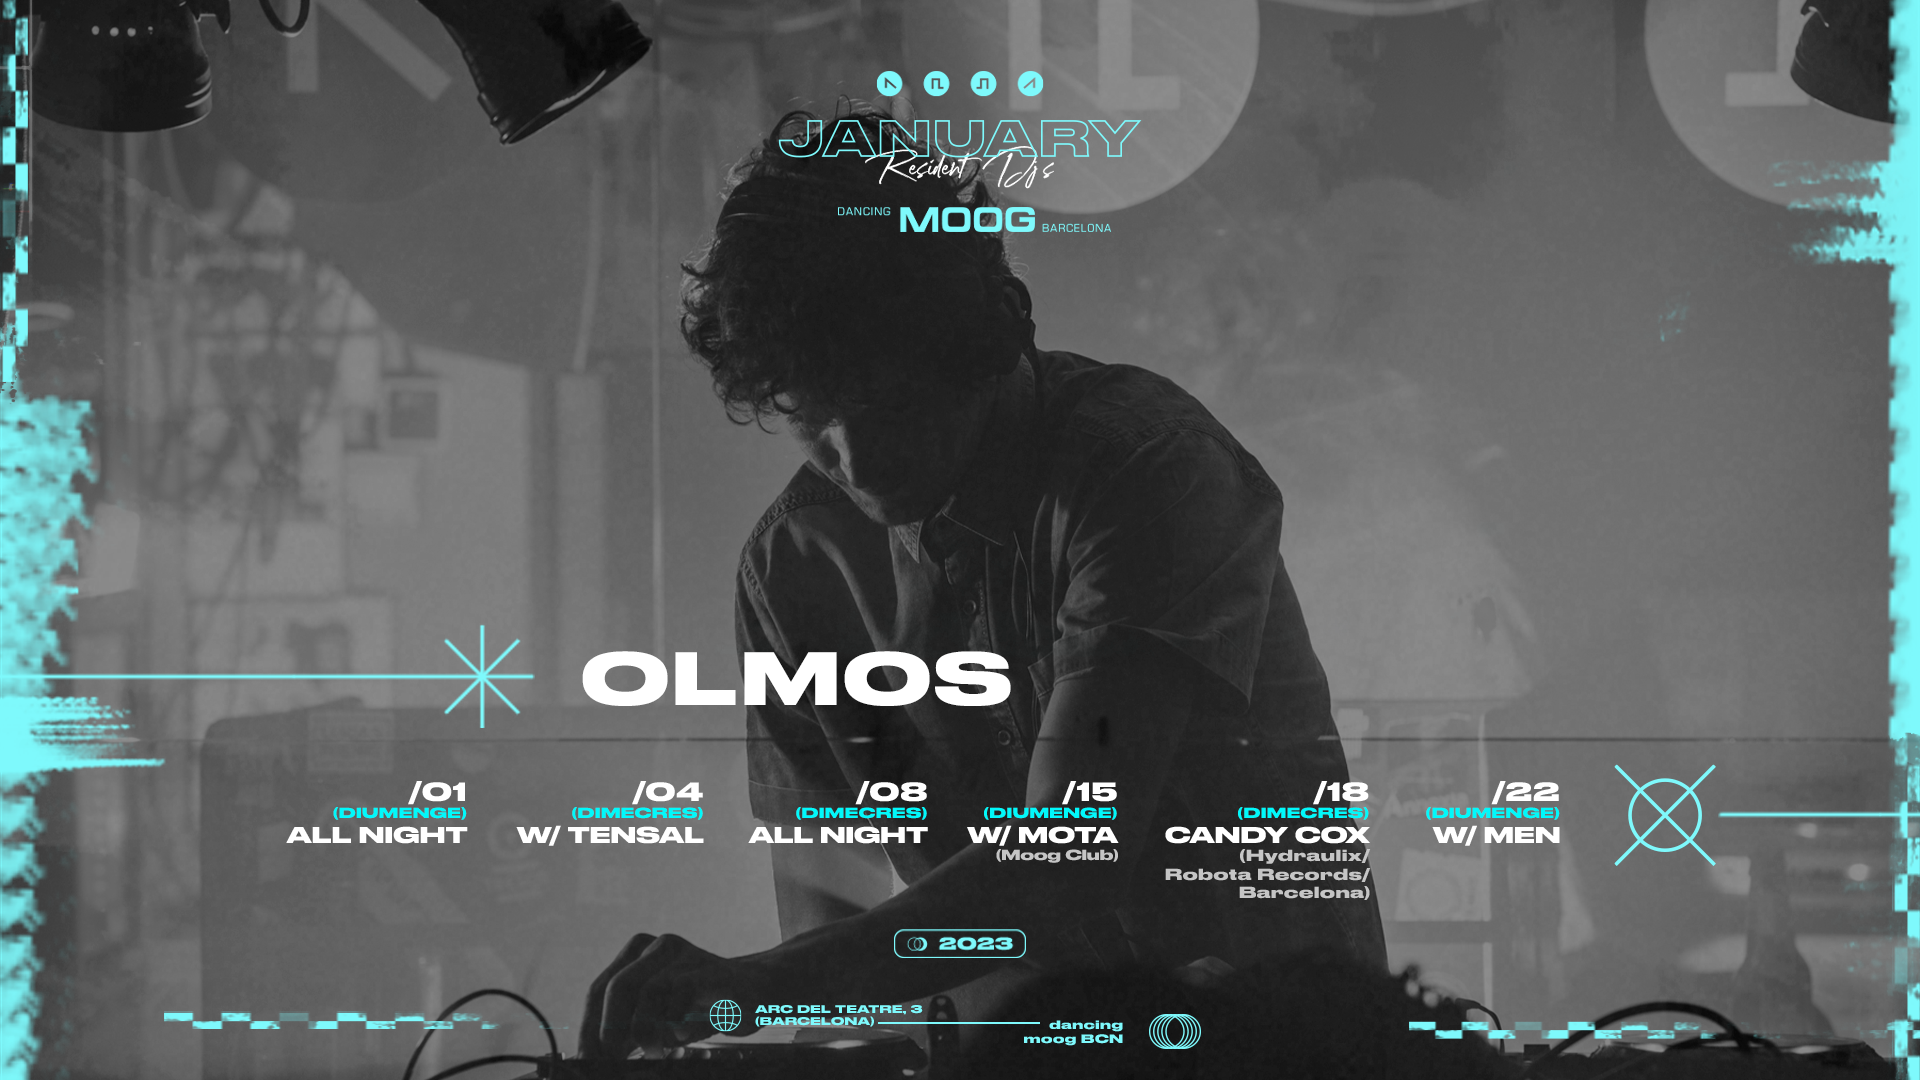 Olmos (MOOG Club) + Mota (MOOG Club) at Moog Club, Barcelona